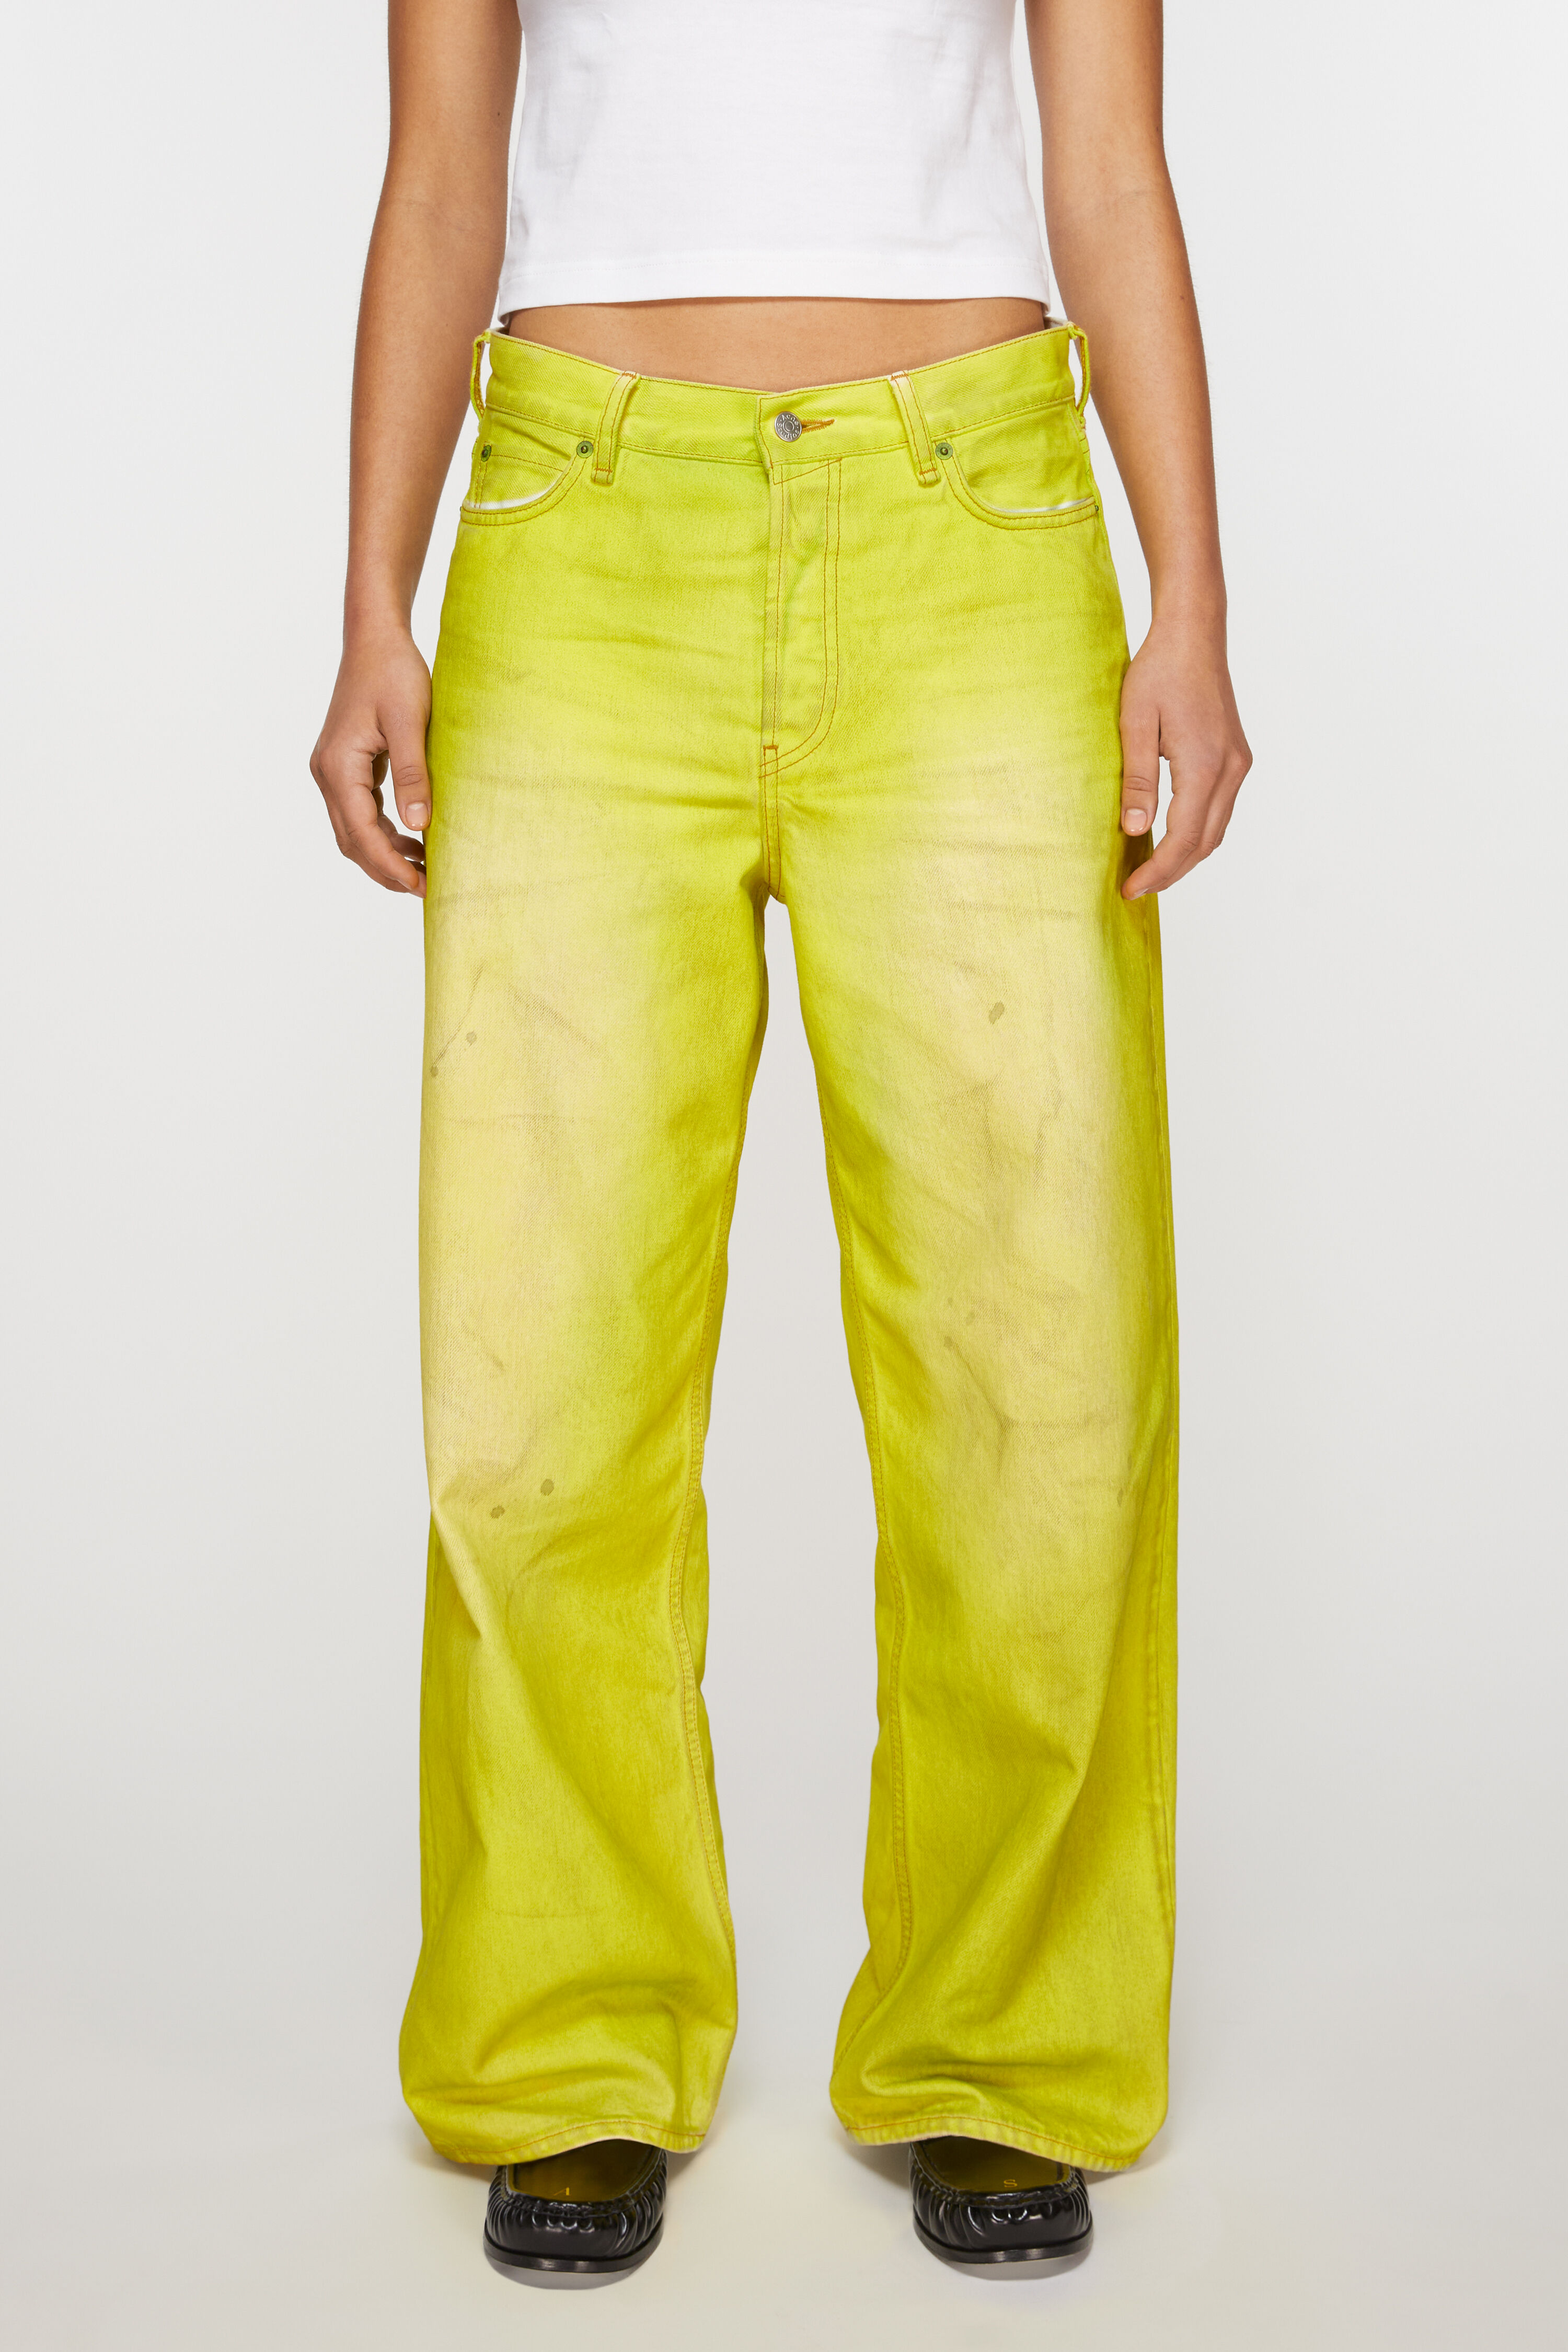 아크네 스튜디오 Acne Studios Loose fit jeans - 1981F - Neon yellow